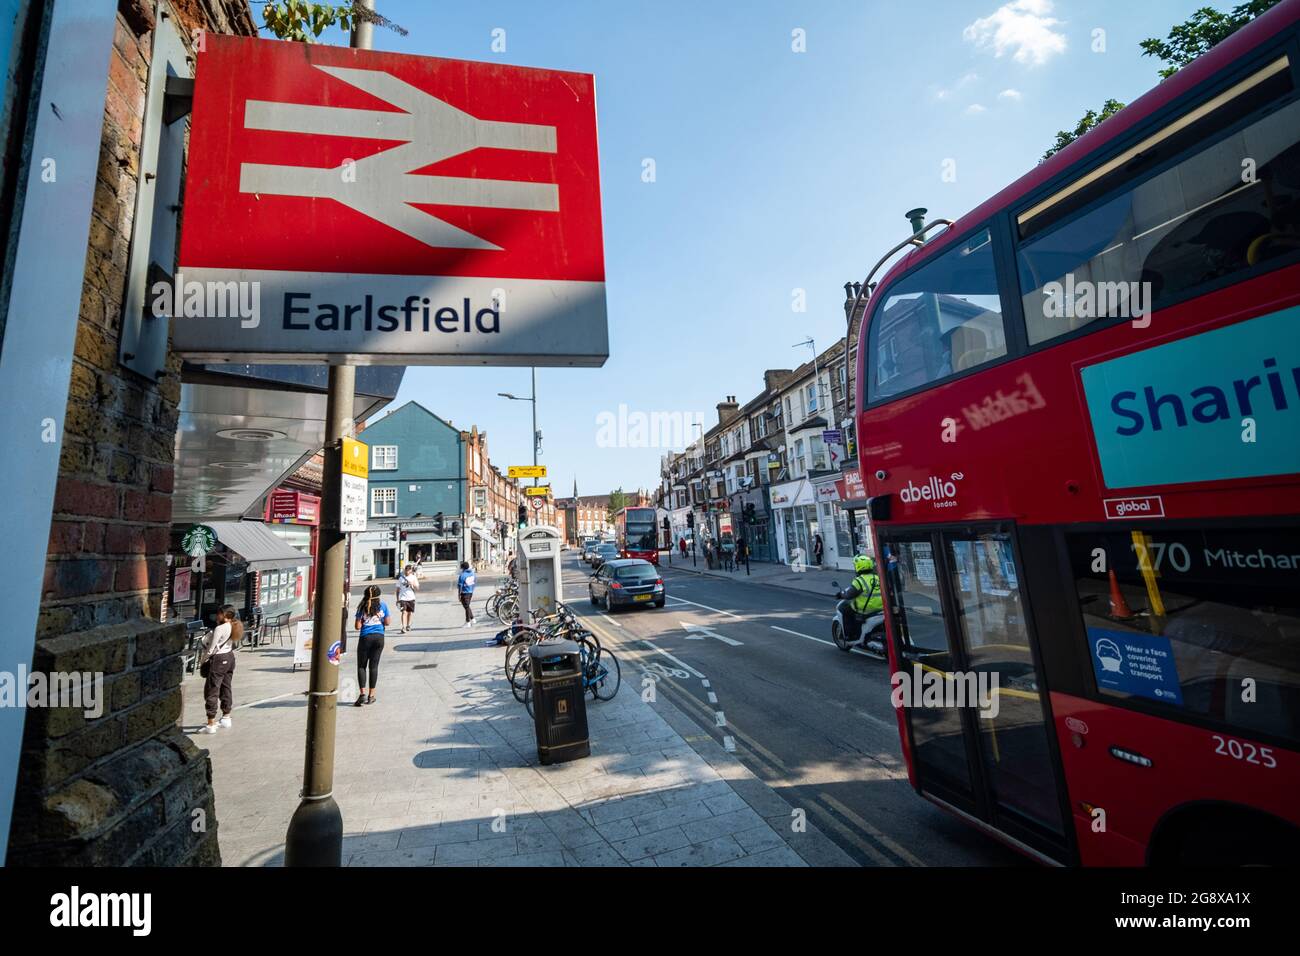 London - Juli 2021: Earlsfield Station an der Garratt Lane im Südwesten Londons Stockfoto